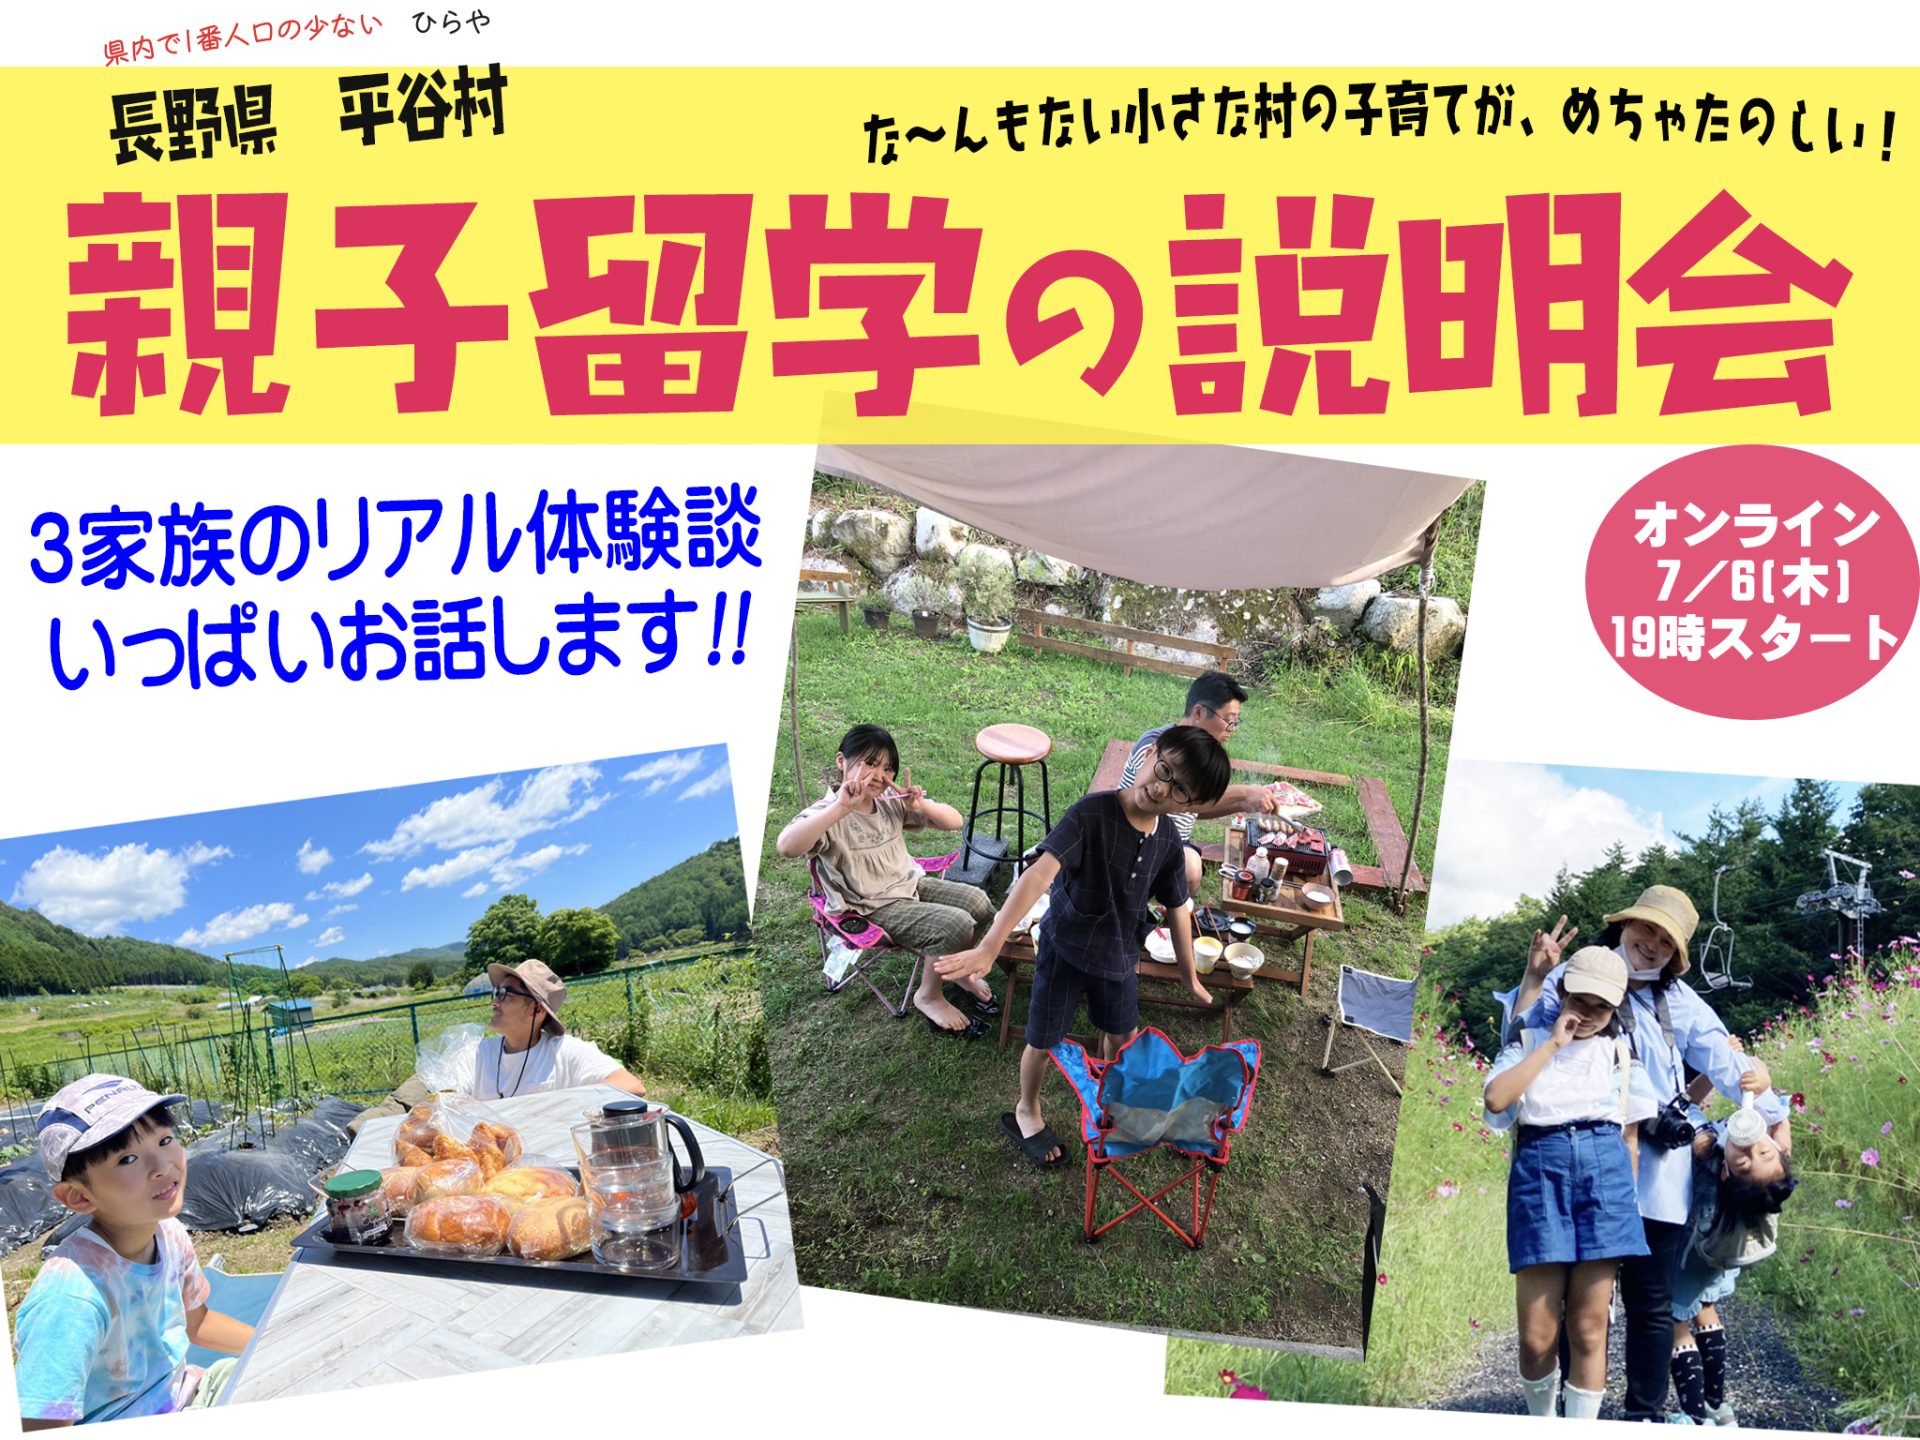 何にもない小さな村だけど、めちゃ楽しい親子留学！長野県平谷村 | 移住関連イベント情報